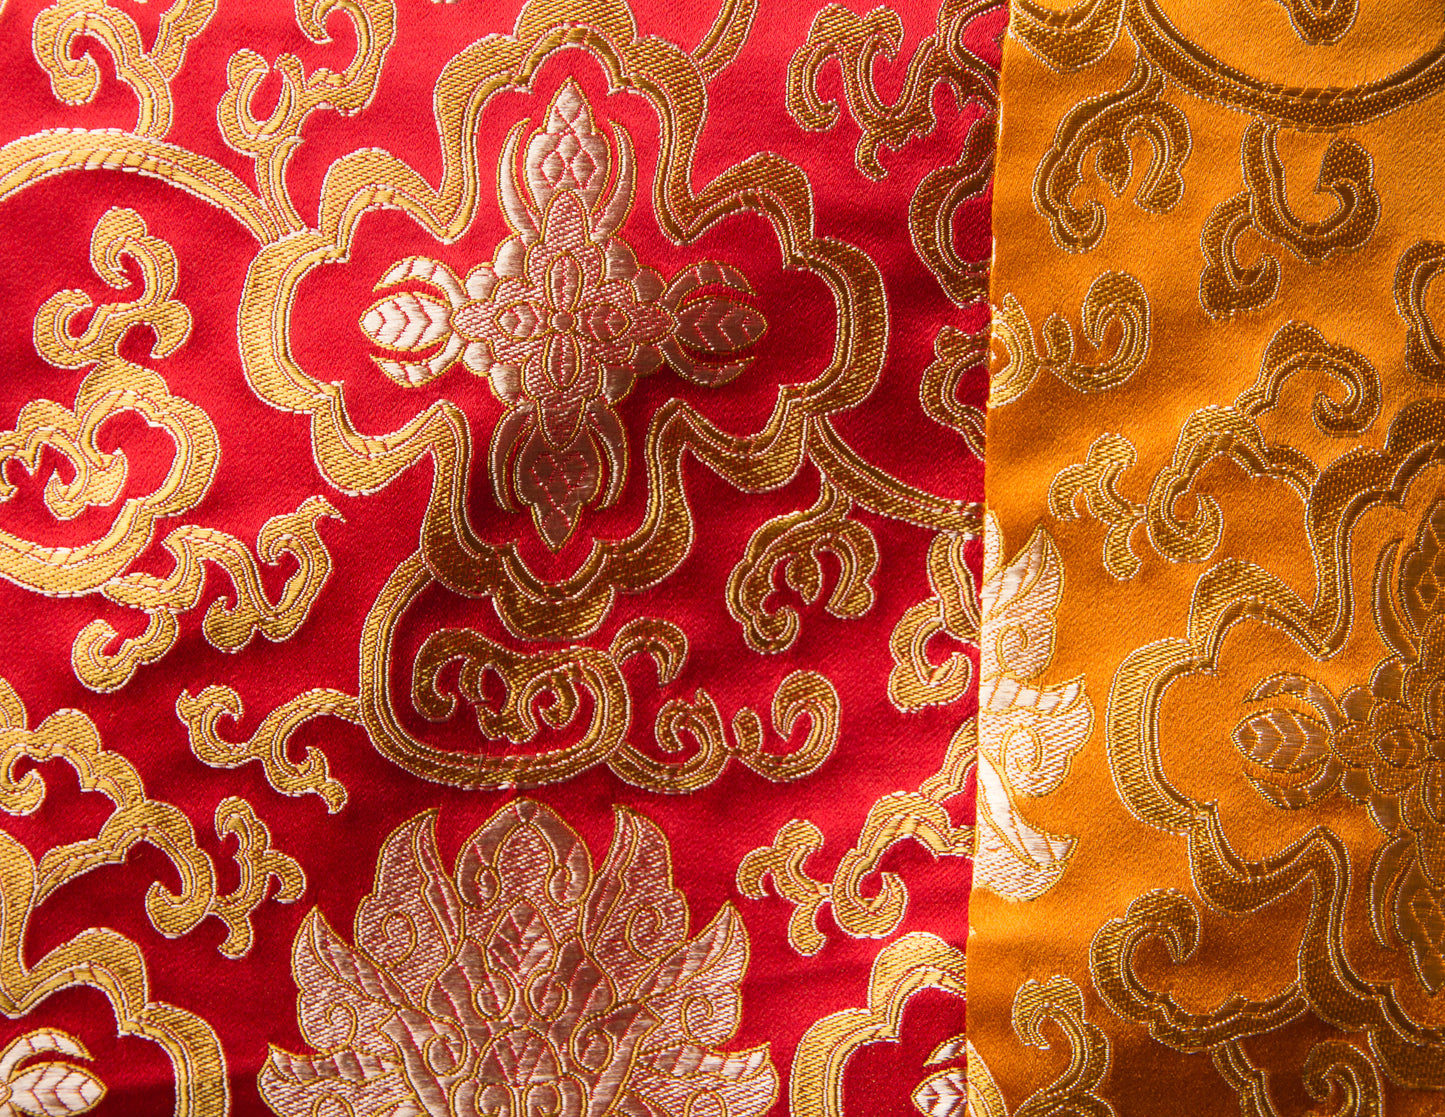 Mantel de brocado cuadrado / Cubierta de mesa de práctica - Naranja y rojo